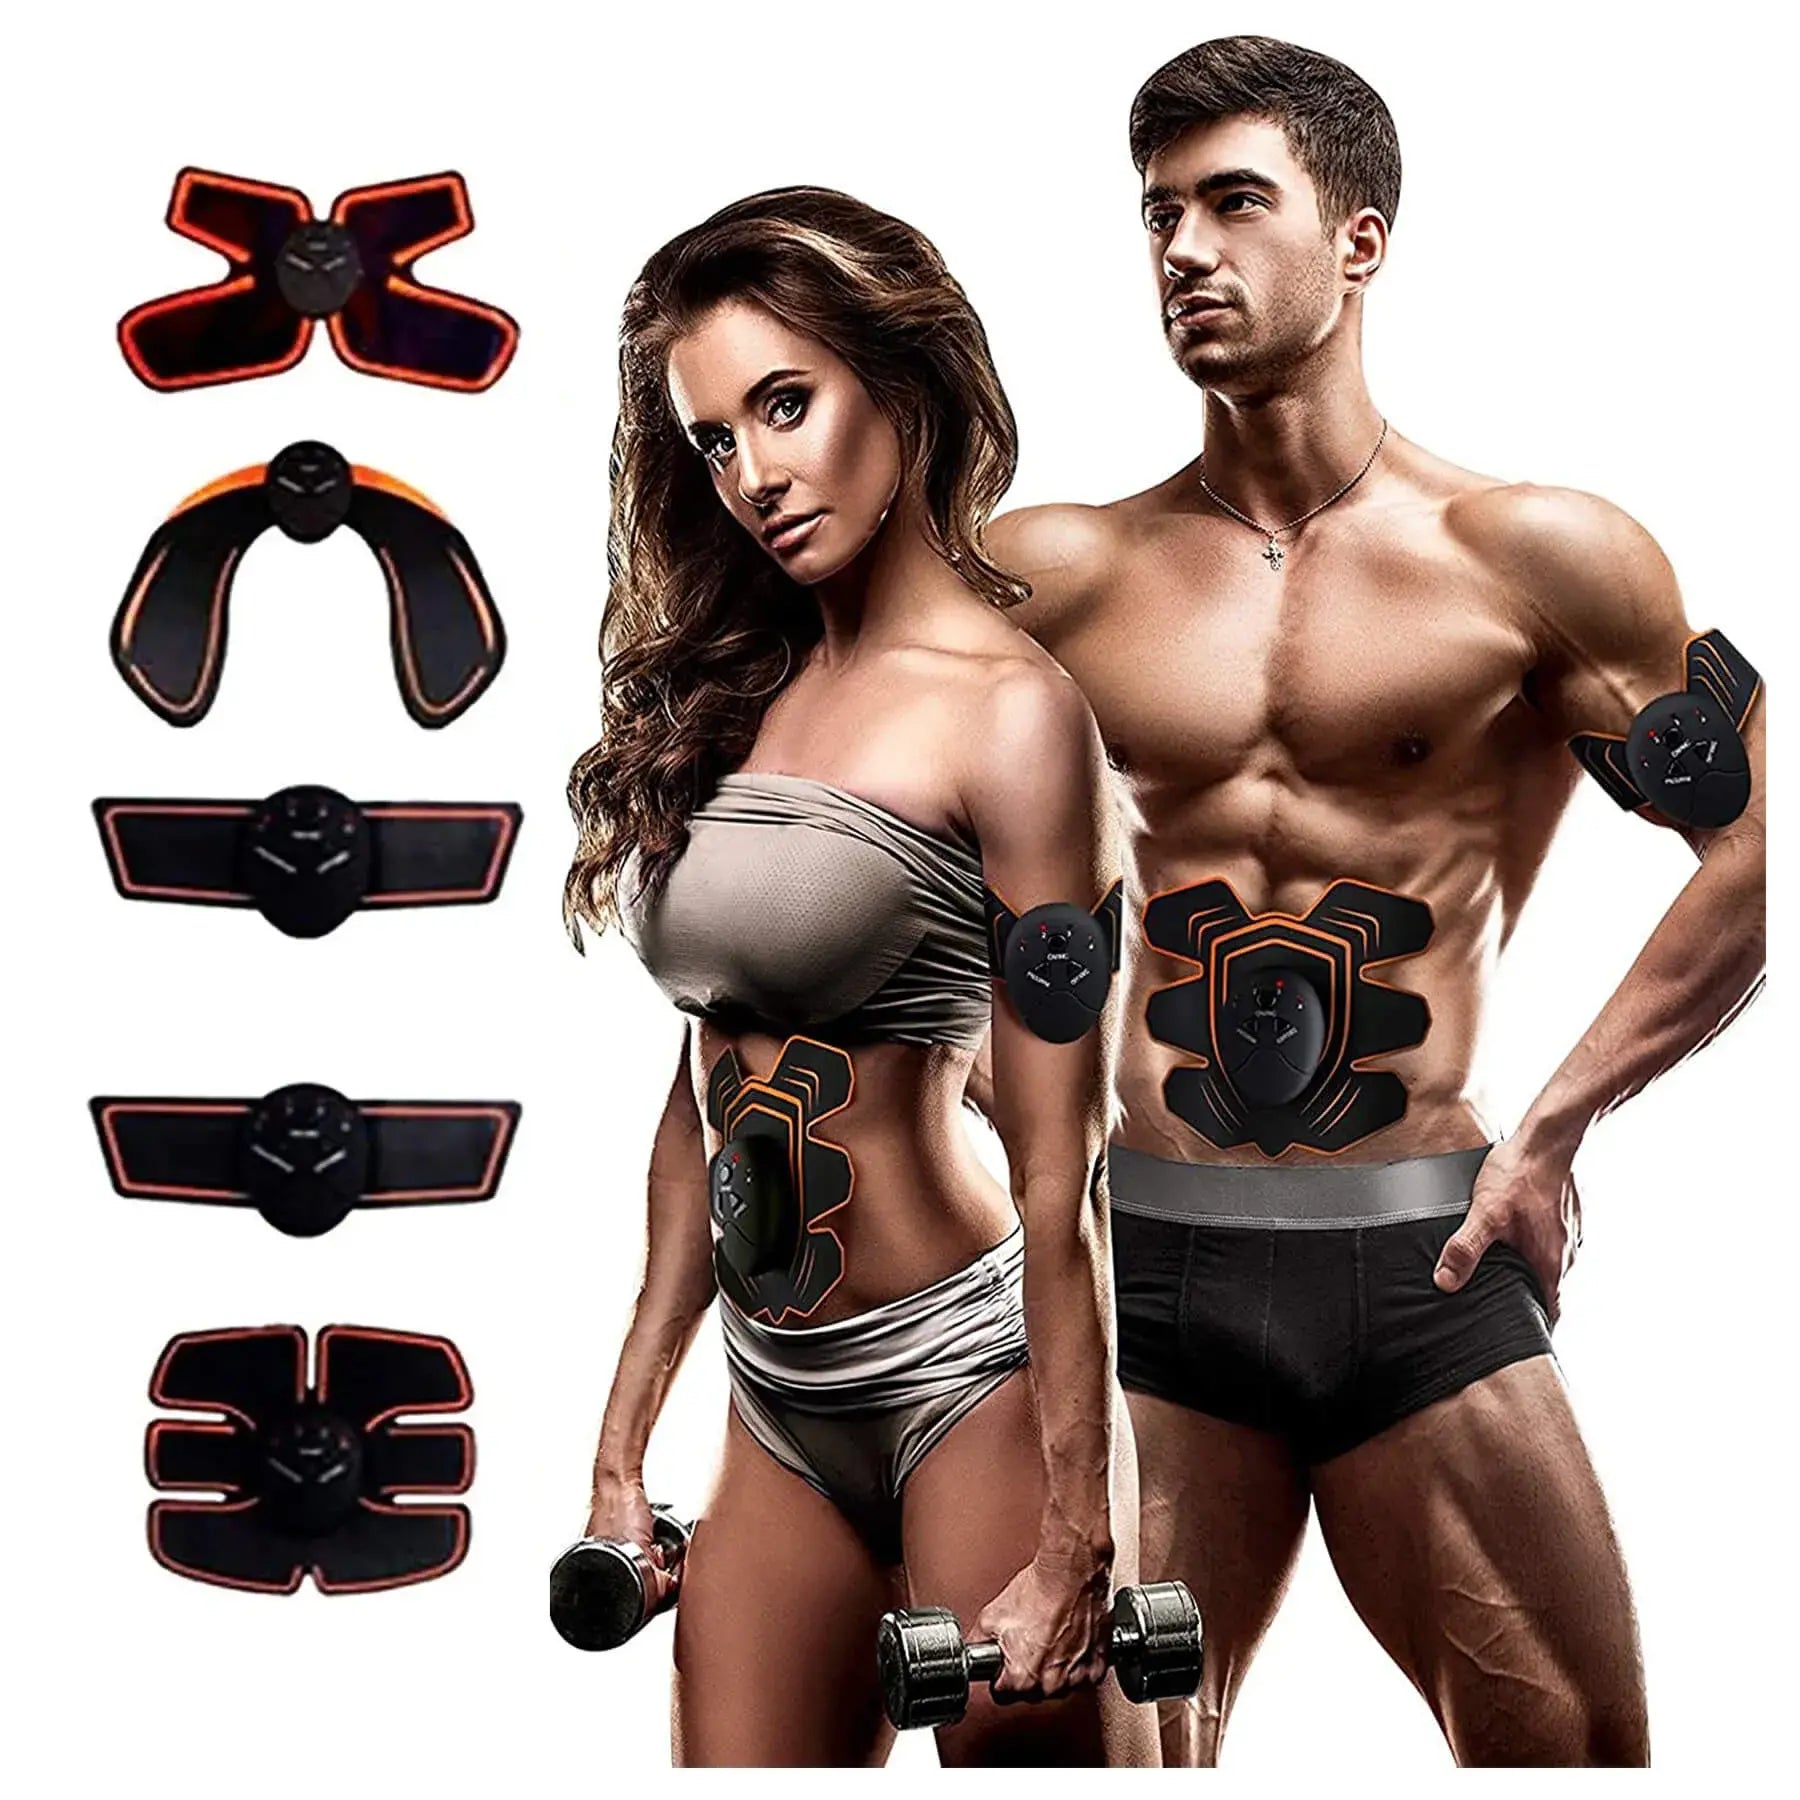 Electro Estimulador Muscular Smart Fitness 5 en 1 Abdomen + Cuello